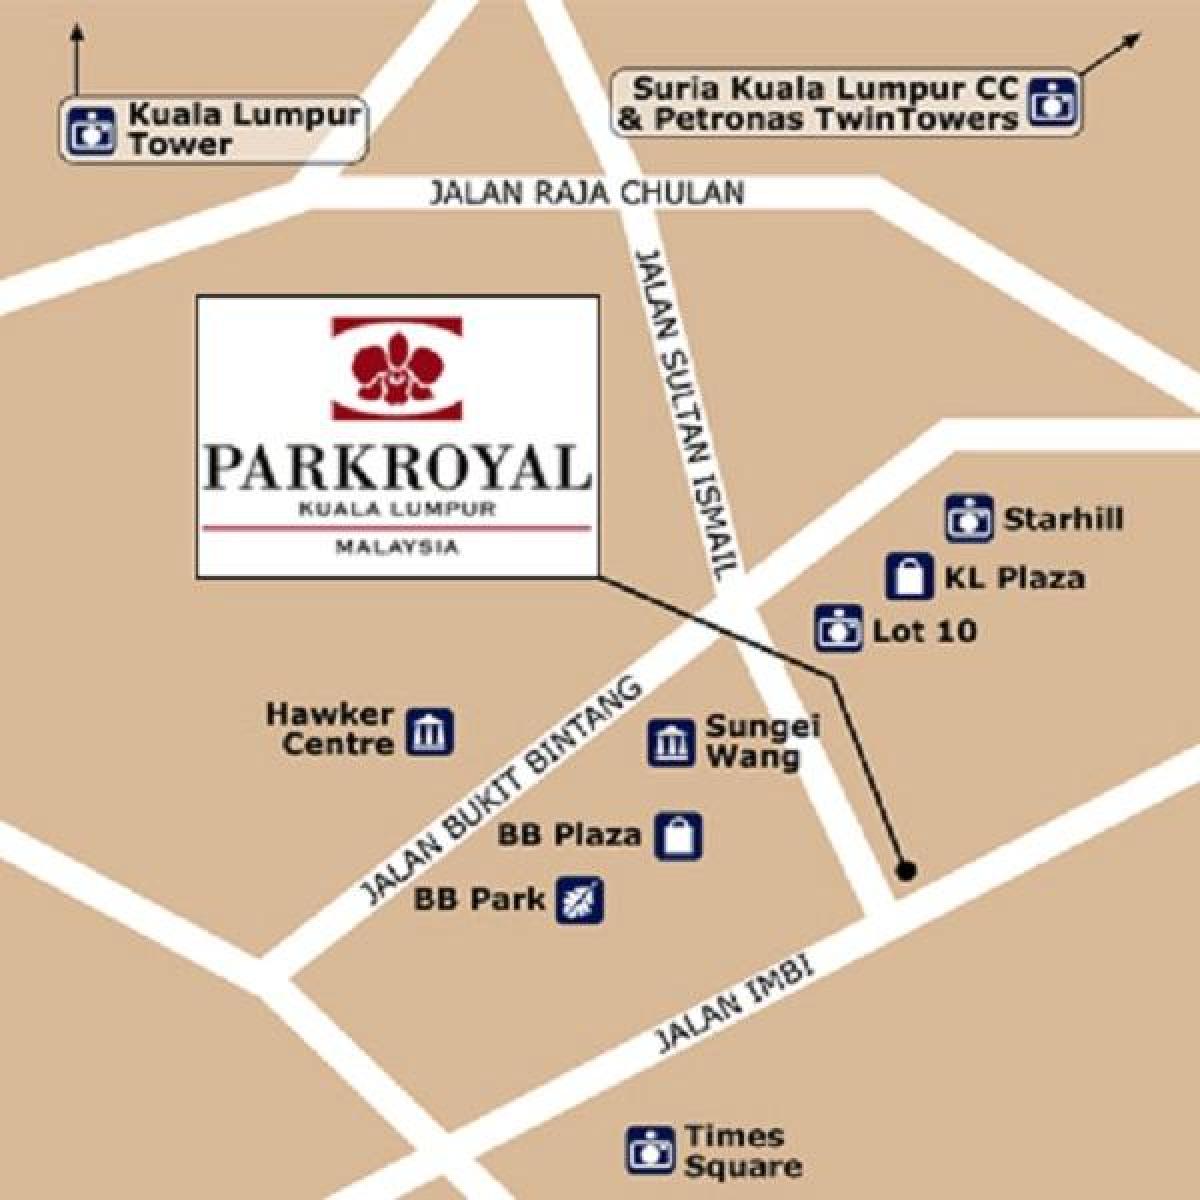 નકશો parkroyal કુઆલા લુમ્પુર